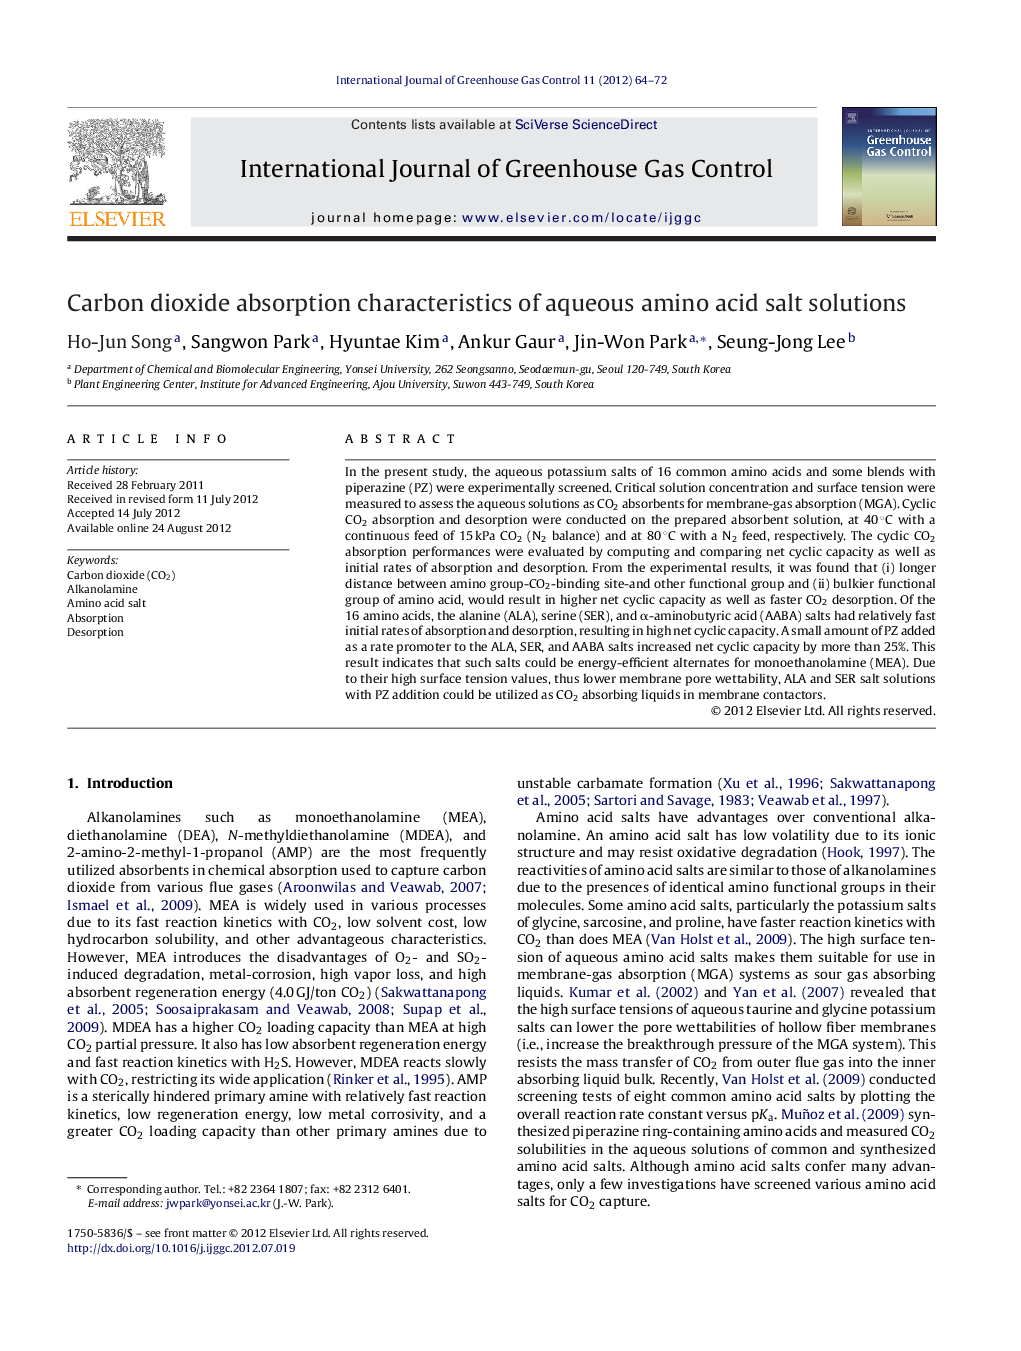 Carbon dioxide absorption characteristics of aqueous amino acid salt solutions